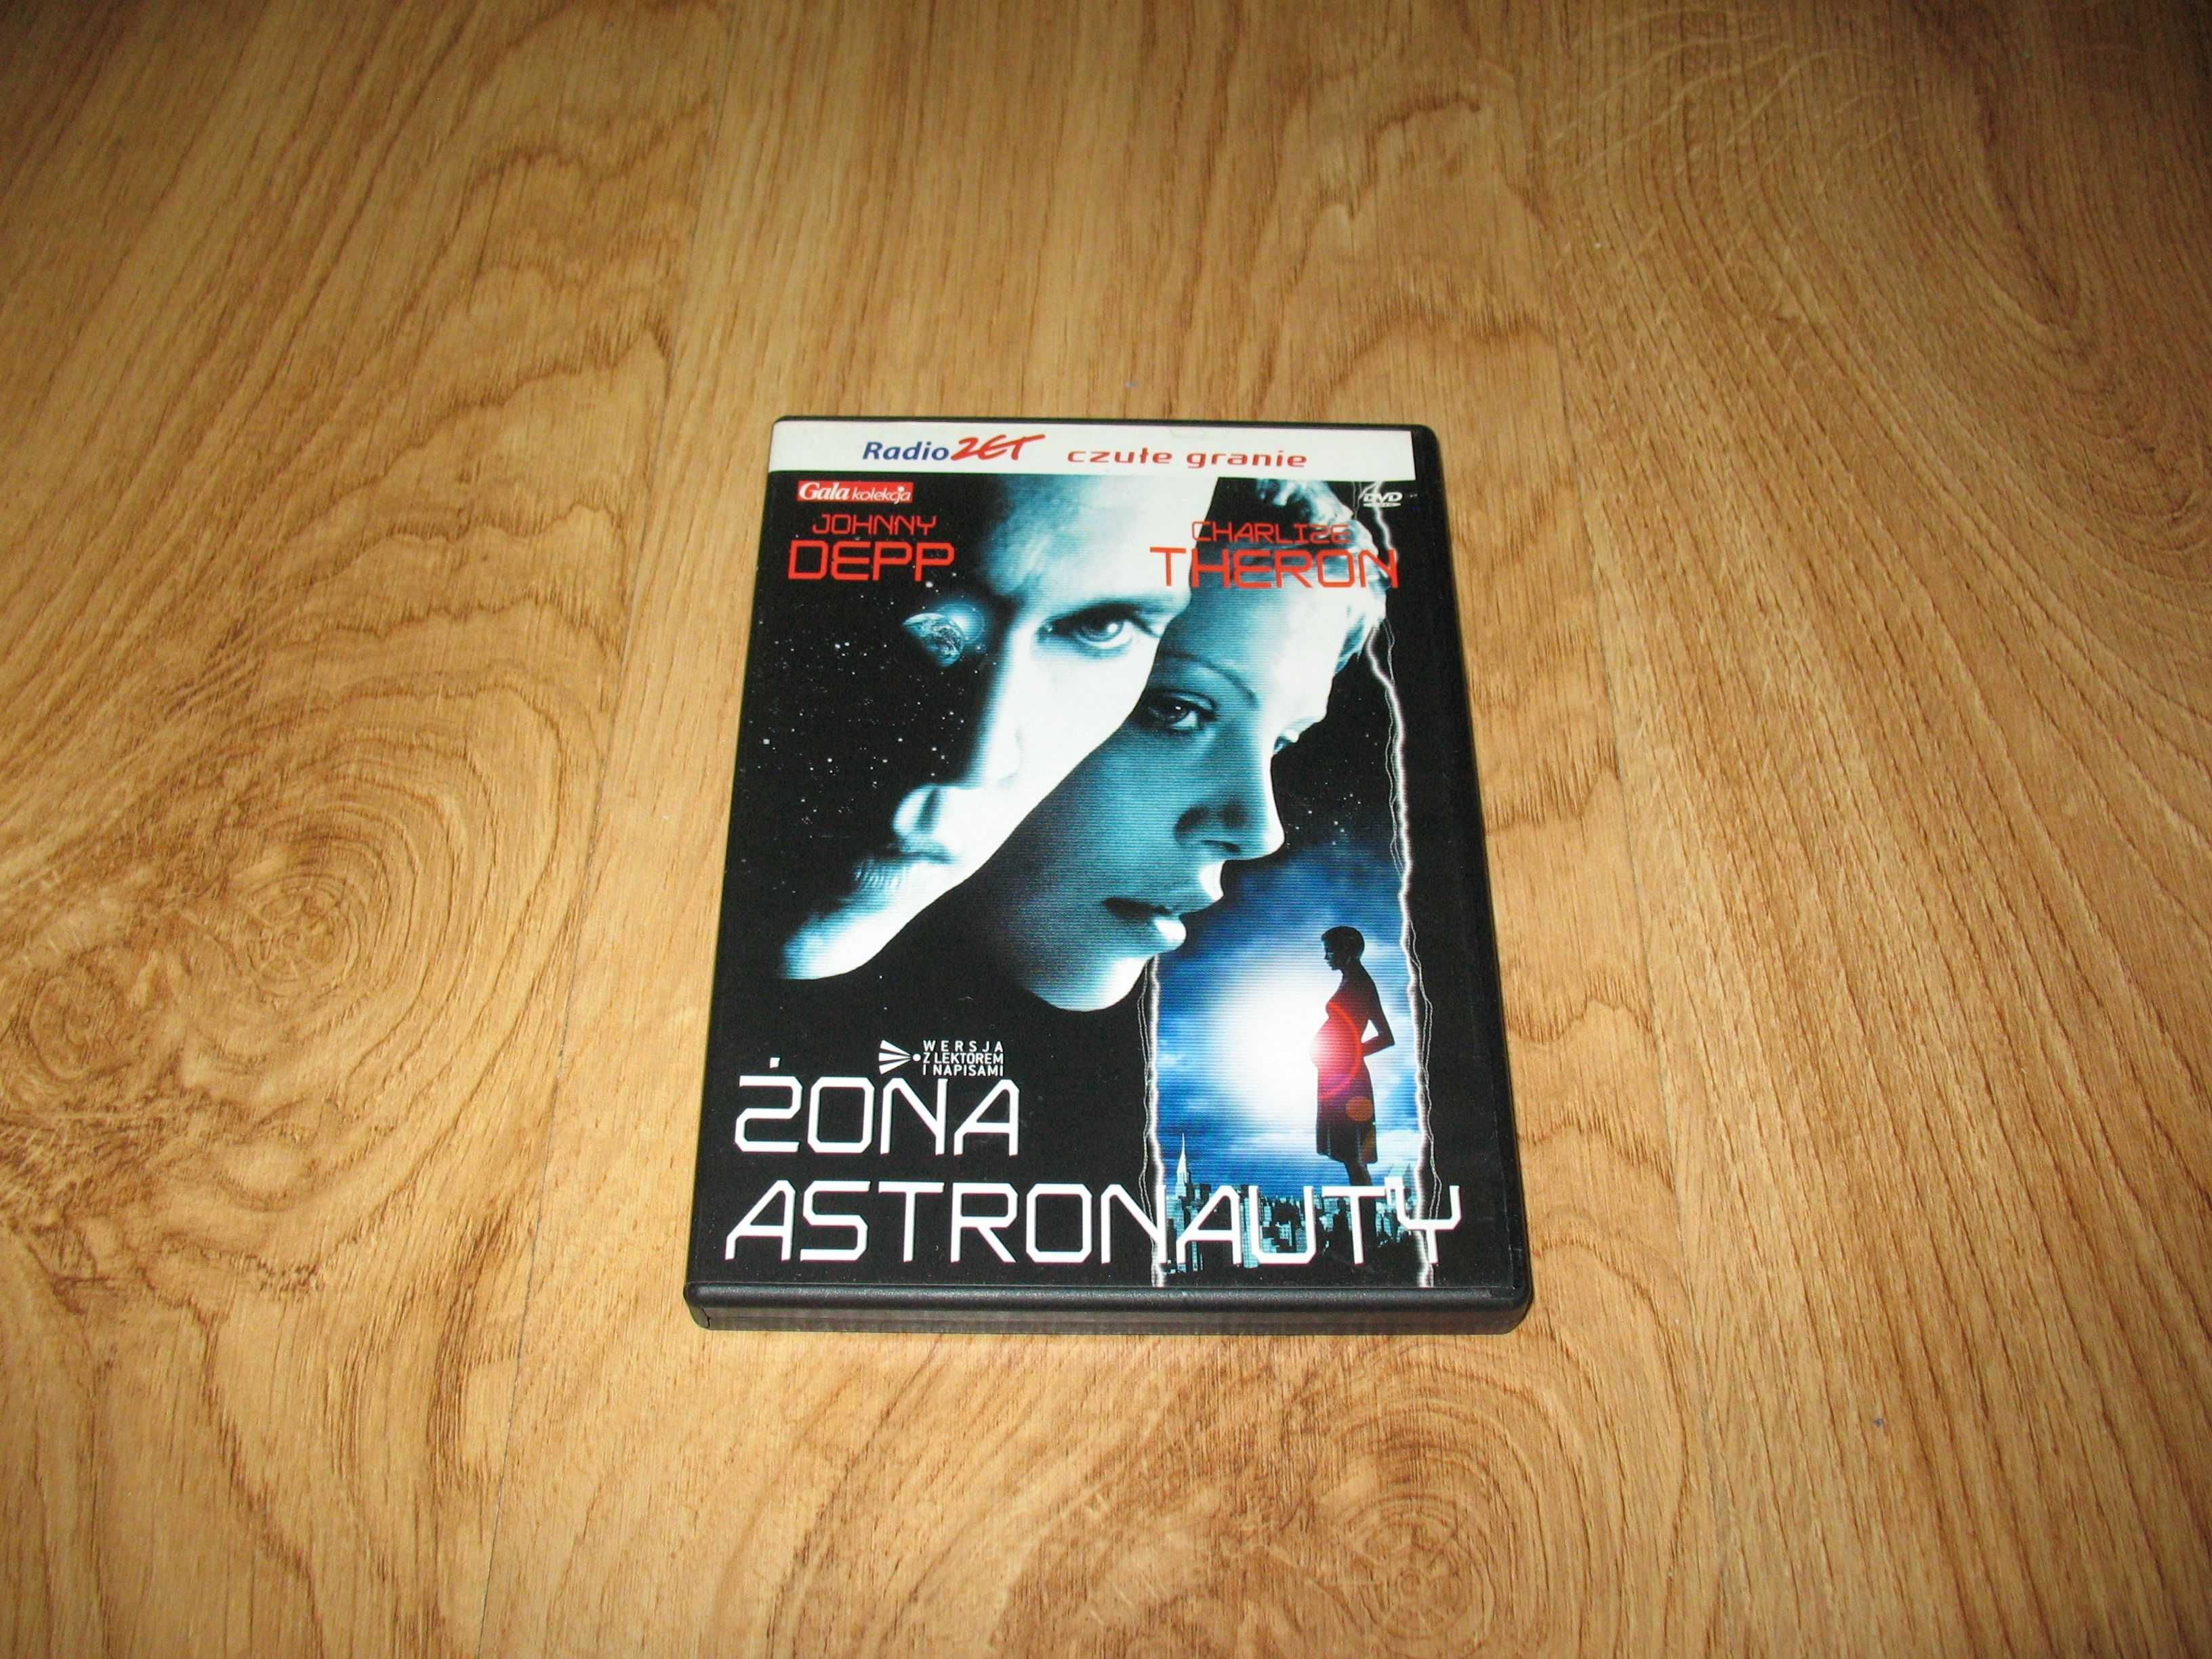 Żona astronauty (DVD)